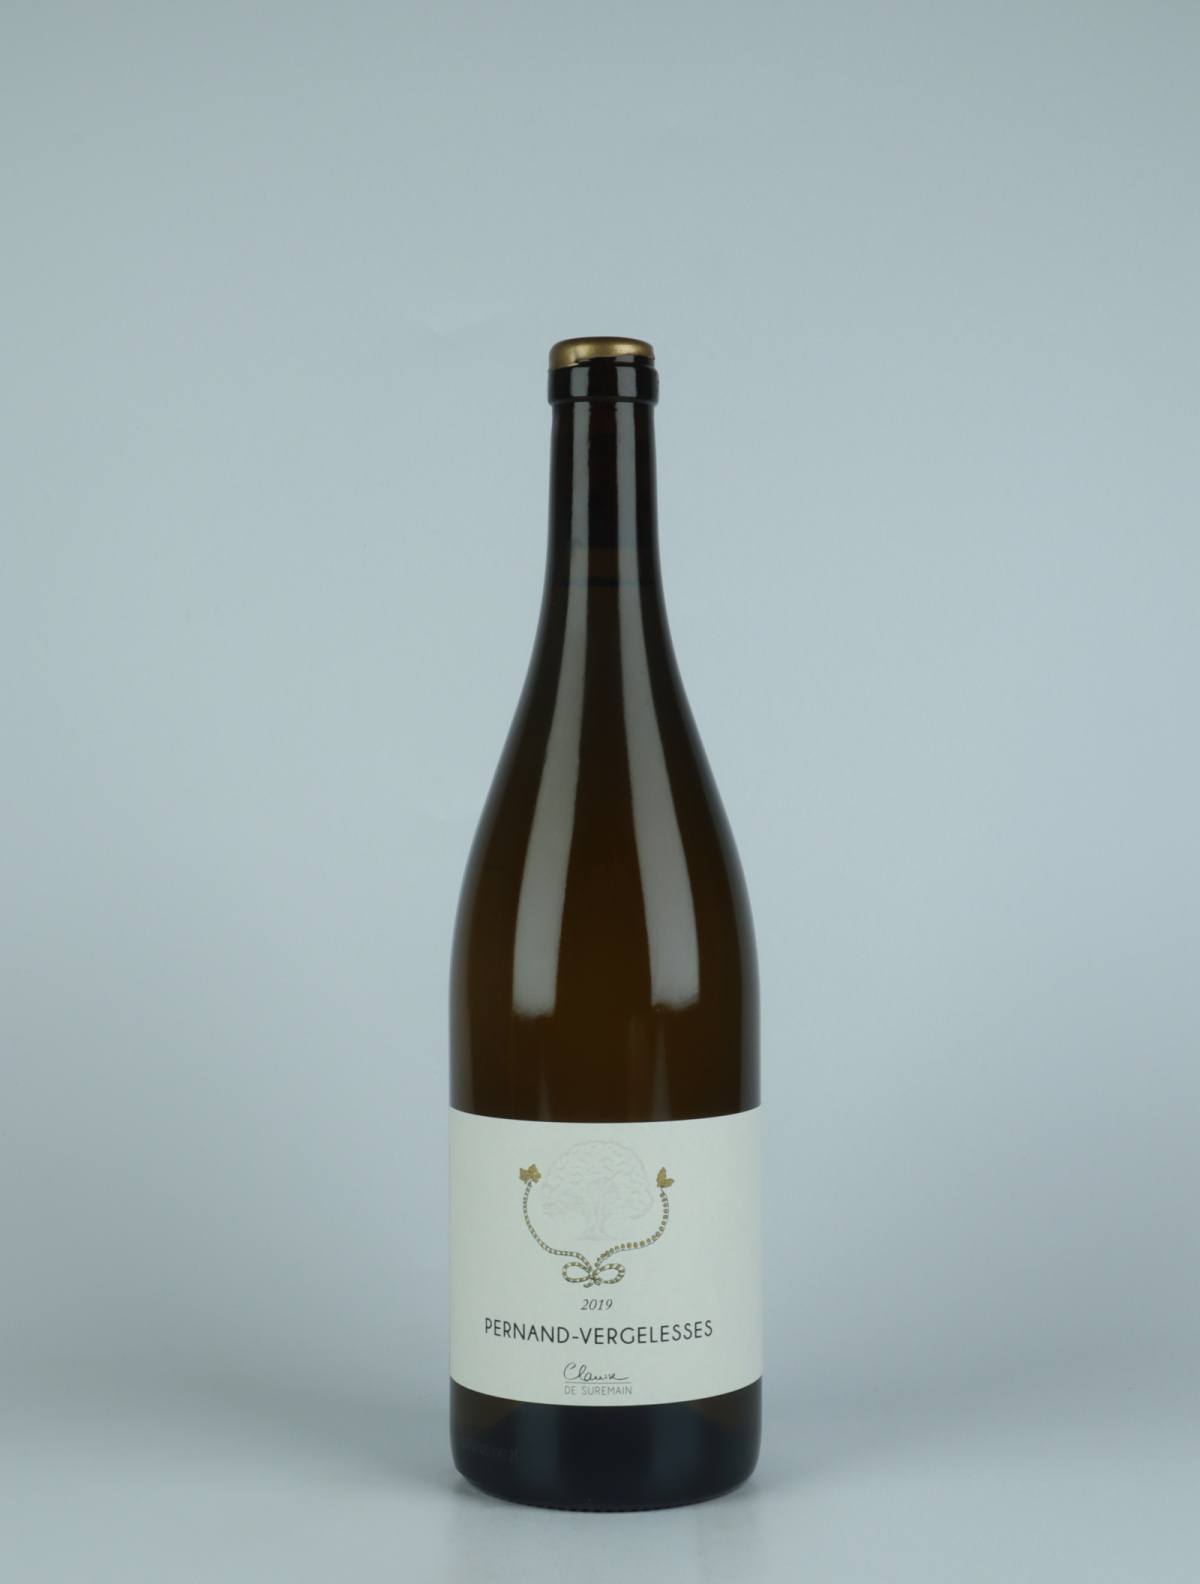 En flaske 2019 Pernand-Vergelesses Hvidvin fra Clarisse de Suremain, Bourgogne i Frankrig